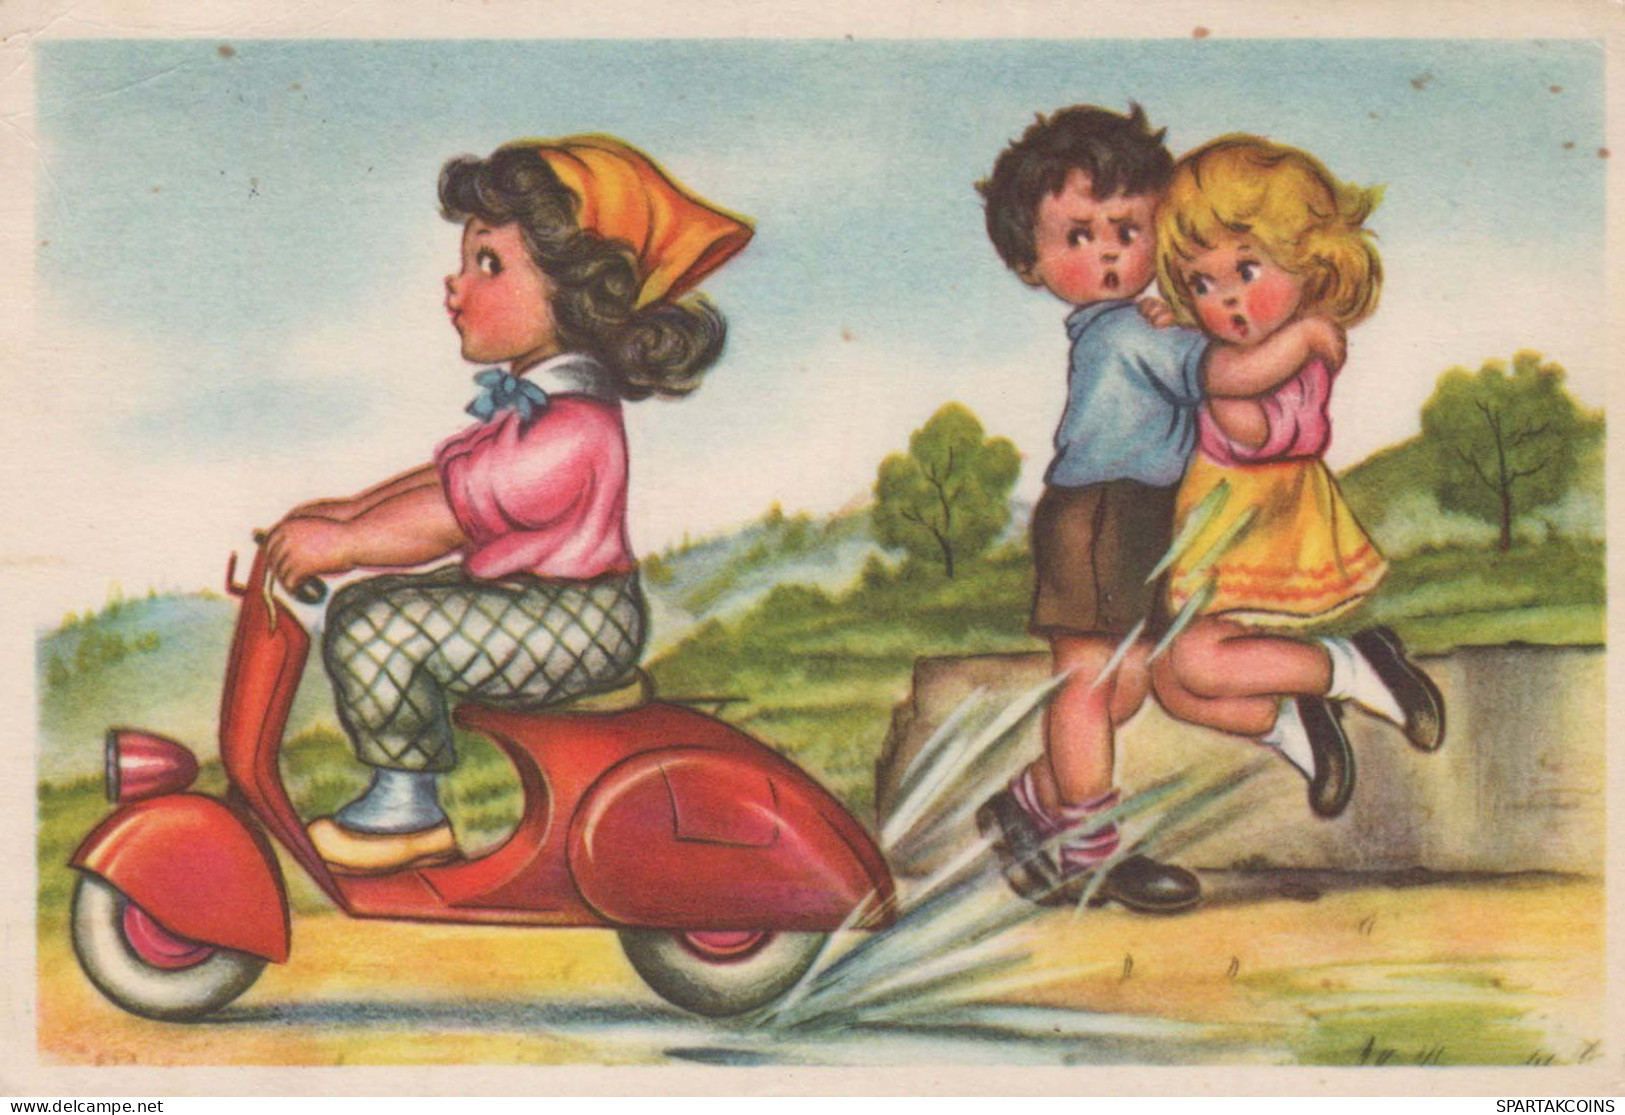 KINDER HUMOR Vintage Ansichtskarte Postkarte CPSM #PBV267.A - Humorkaarten